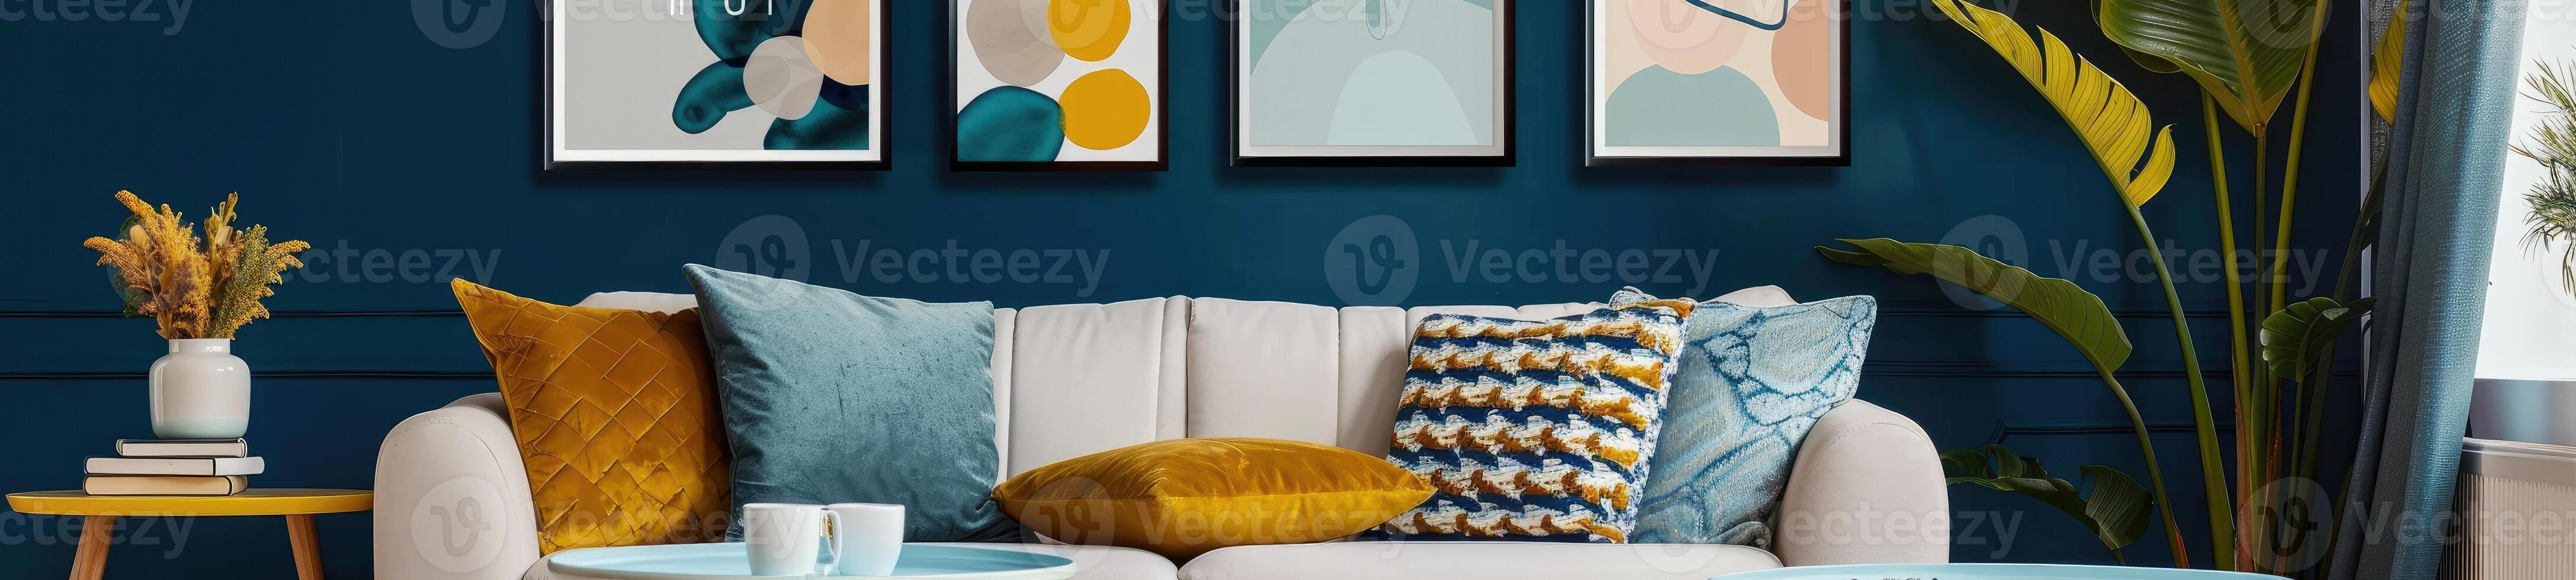 en mysigt och eleganta levande rum med modern dekor i gul och blå färger foto